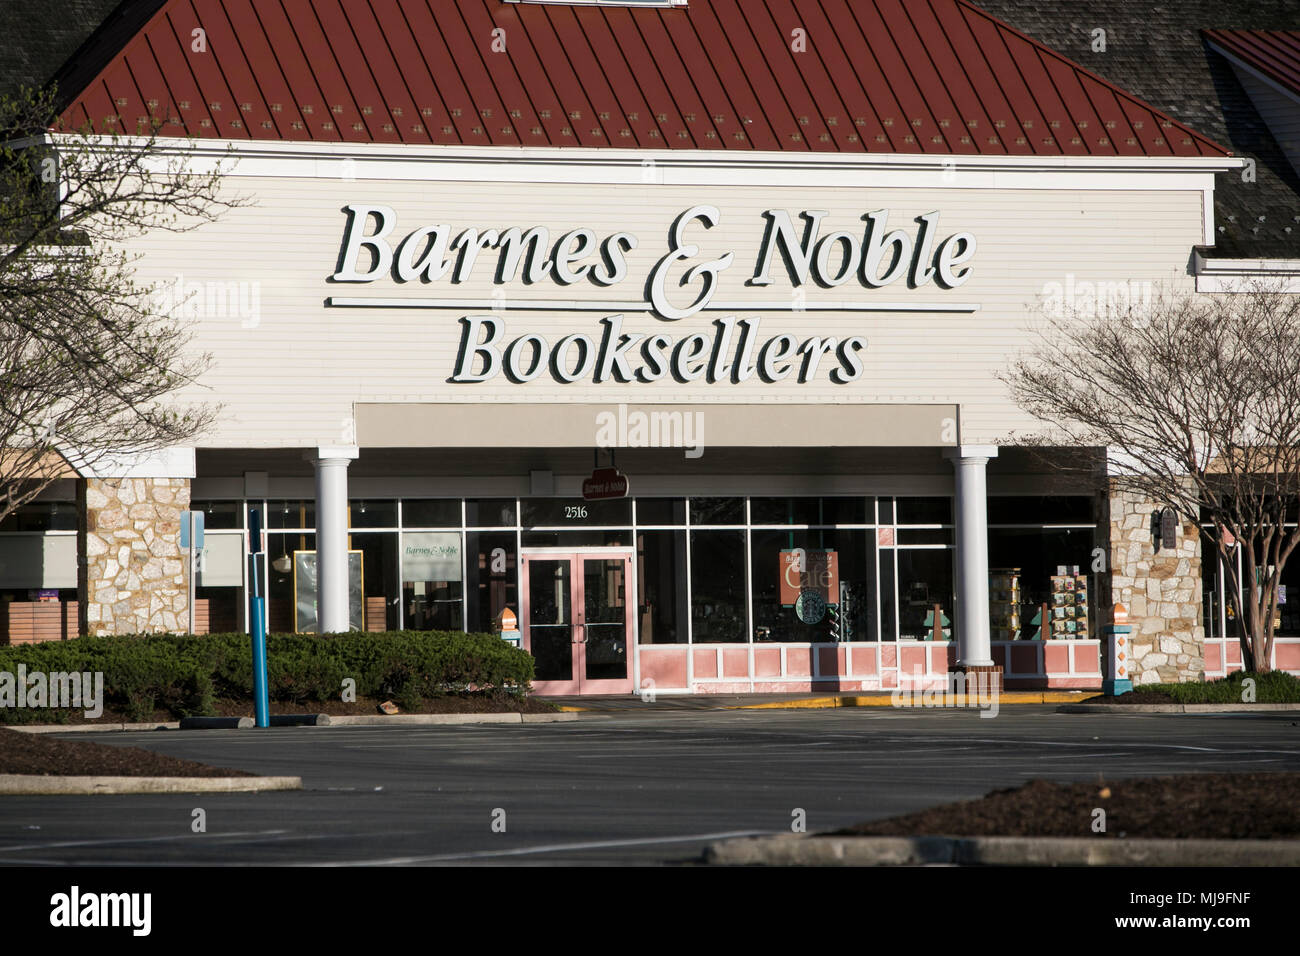 Un logo affiche à l'extérieur d'un magasin Barnes & Noble Booksellers dans Annapolis, Maryland le 29 avril 2018. Banque D'Images